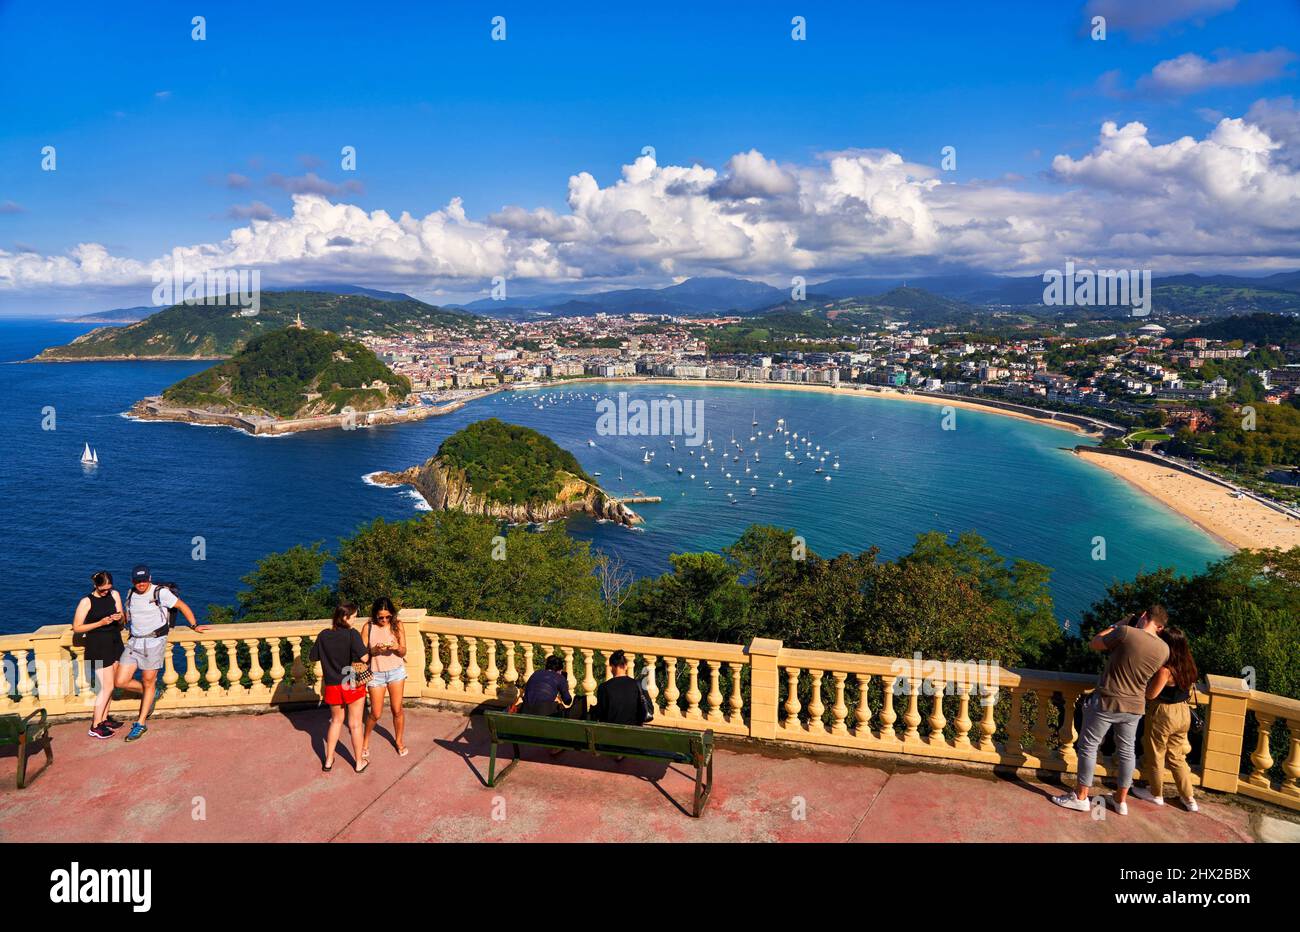 Turistas fotografiando la bahía de La Concha desde el mirador del Monte Igeldo, Donostia, San Sebastián, ciudad cosmopolita de 187.000 habitantes, notable Foto de stock